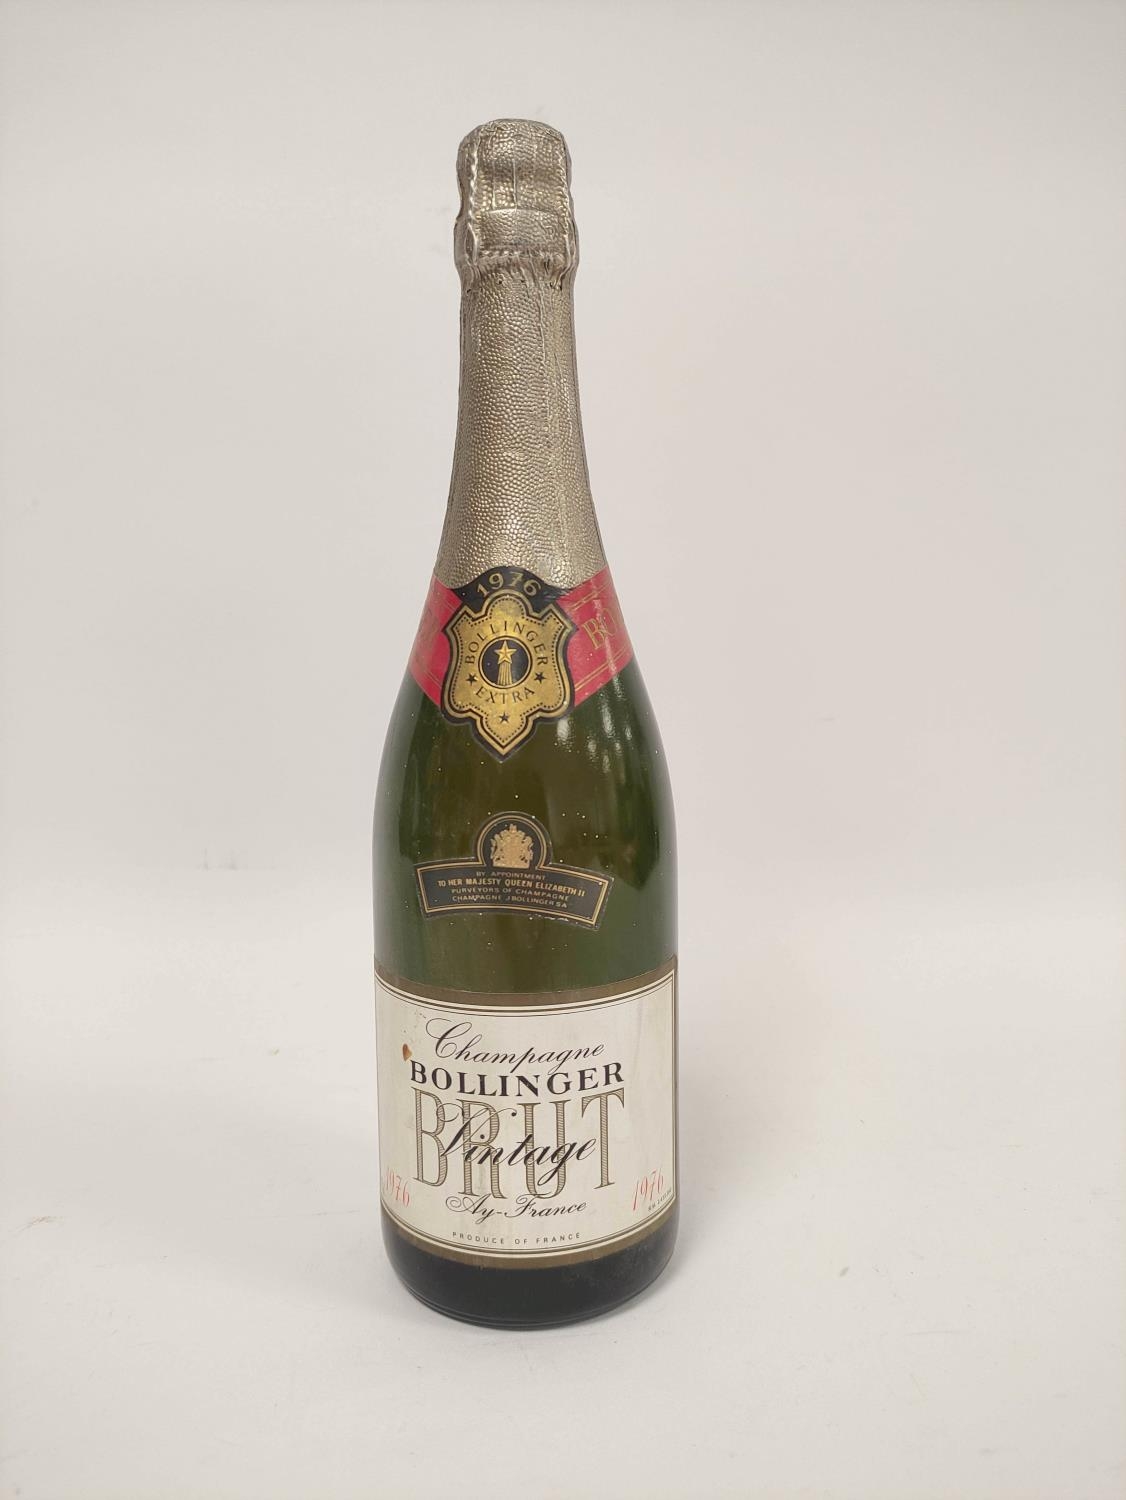 Bollinger 1976 vintage Brut champagne, 75cl.